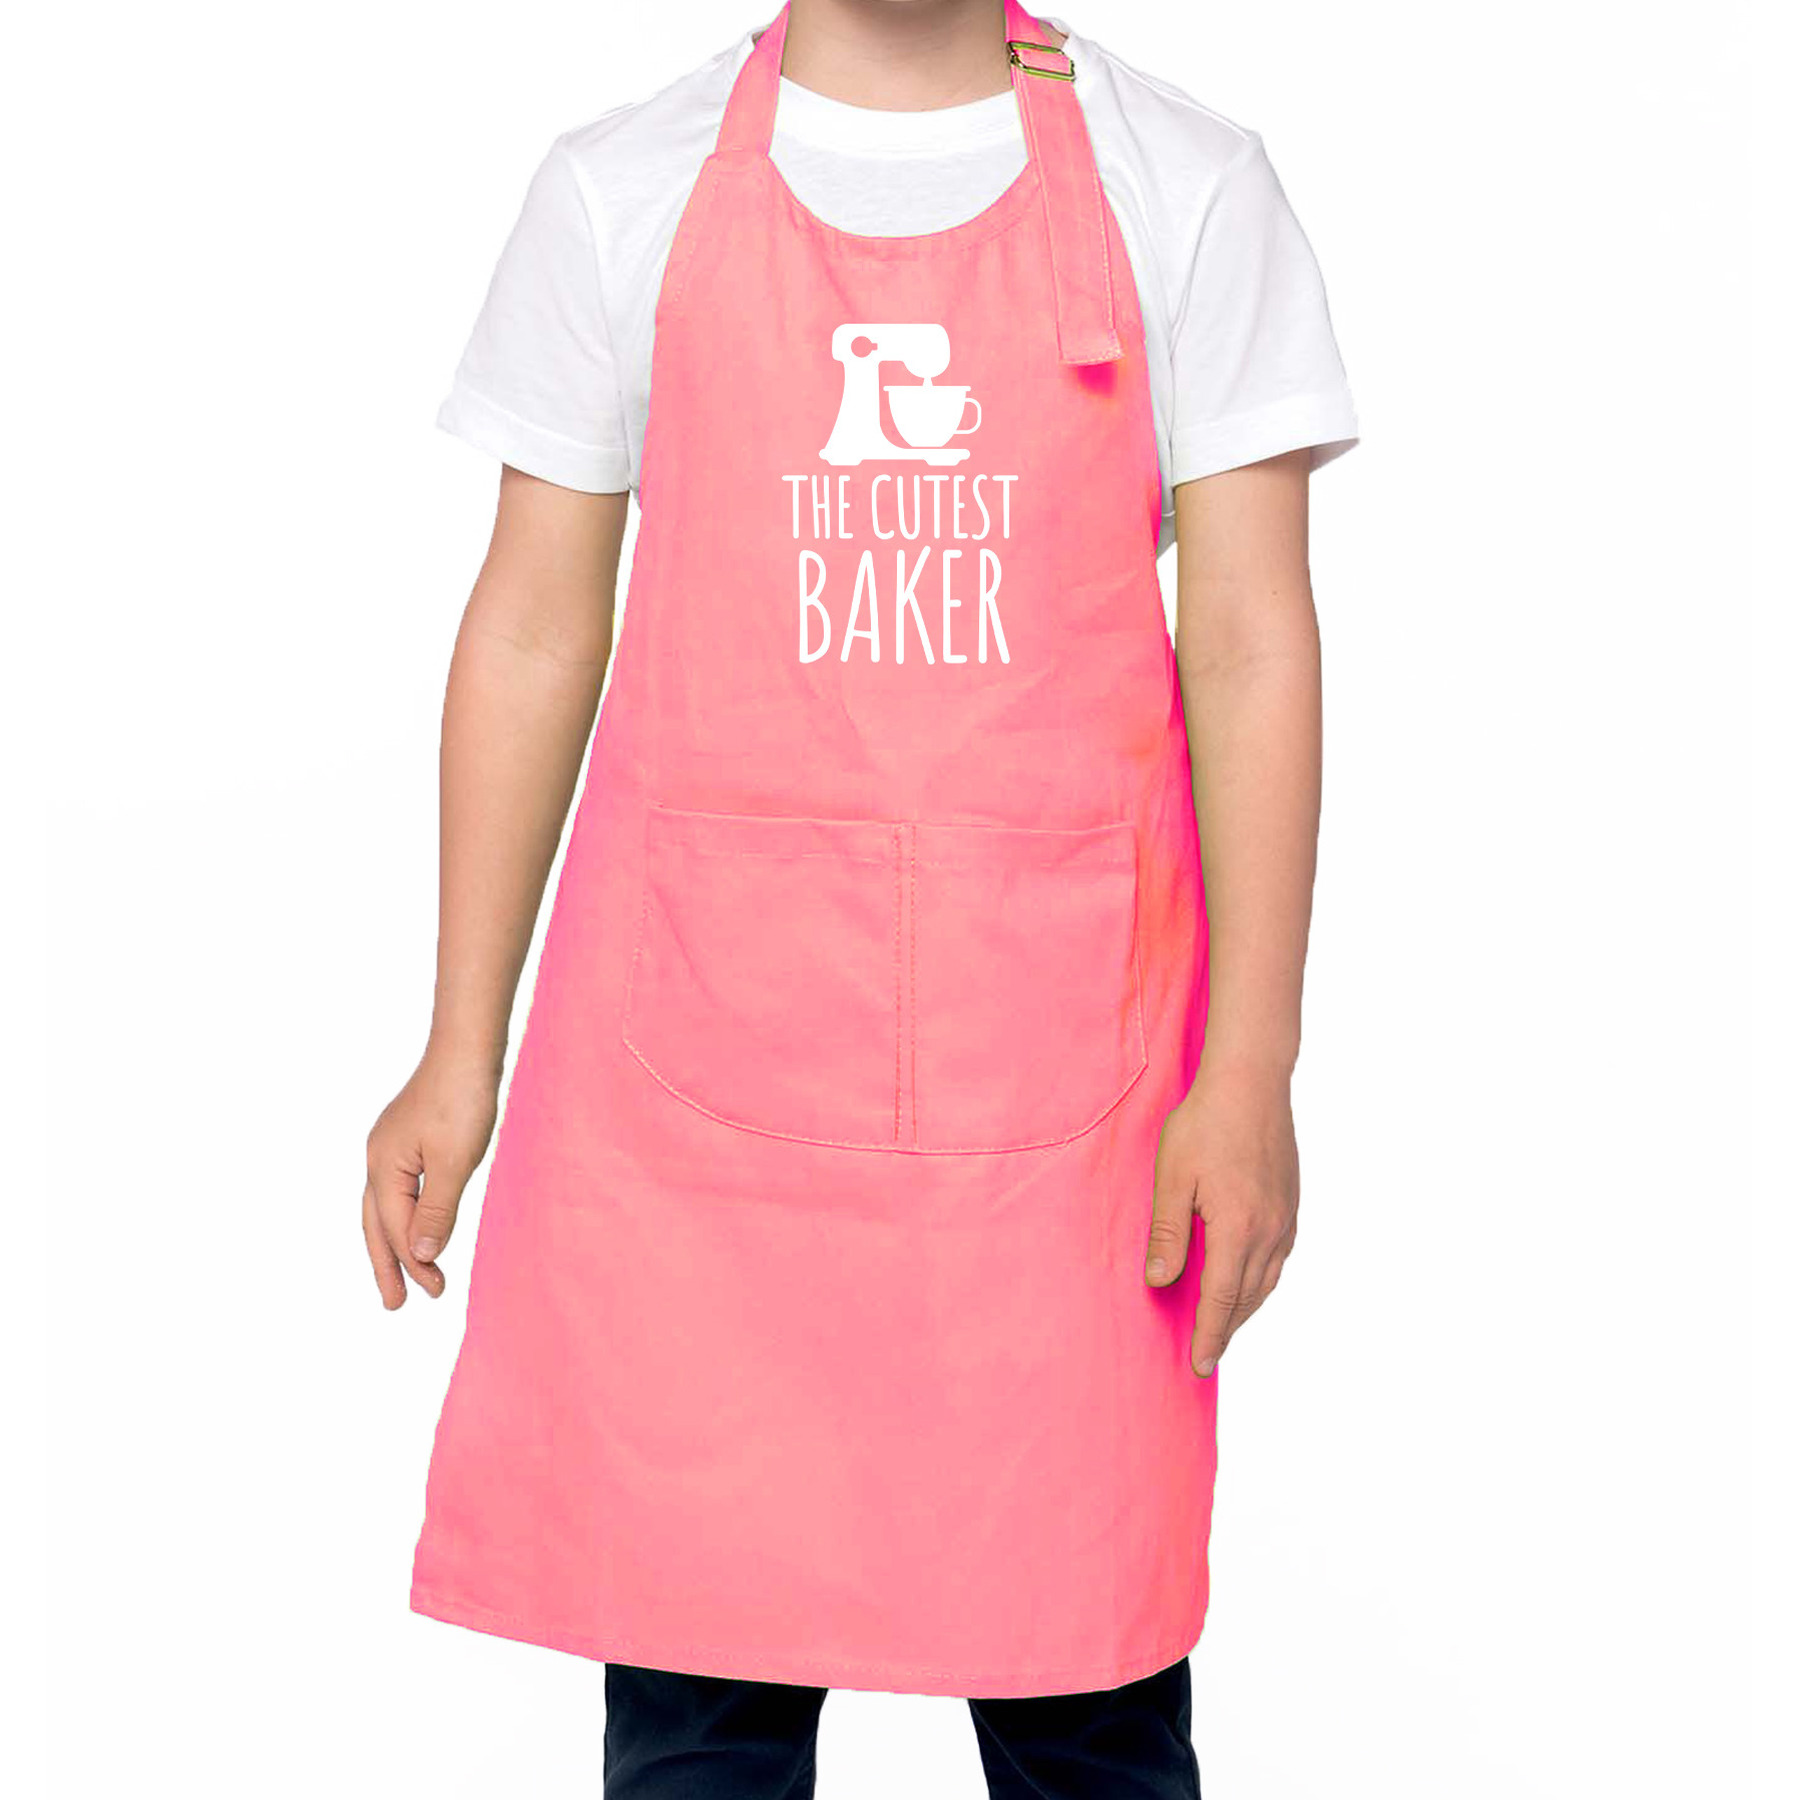 The cutest baker keukenschort- kinder bakschort roze voor jongens en meisjes Bakken met kinderen